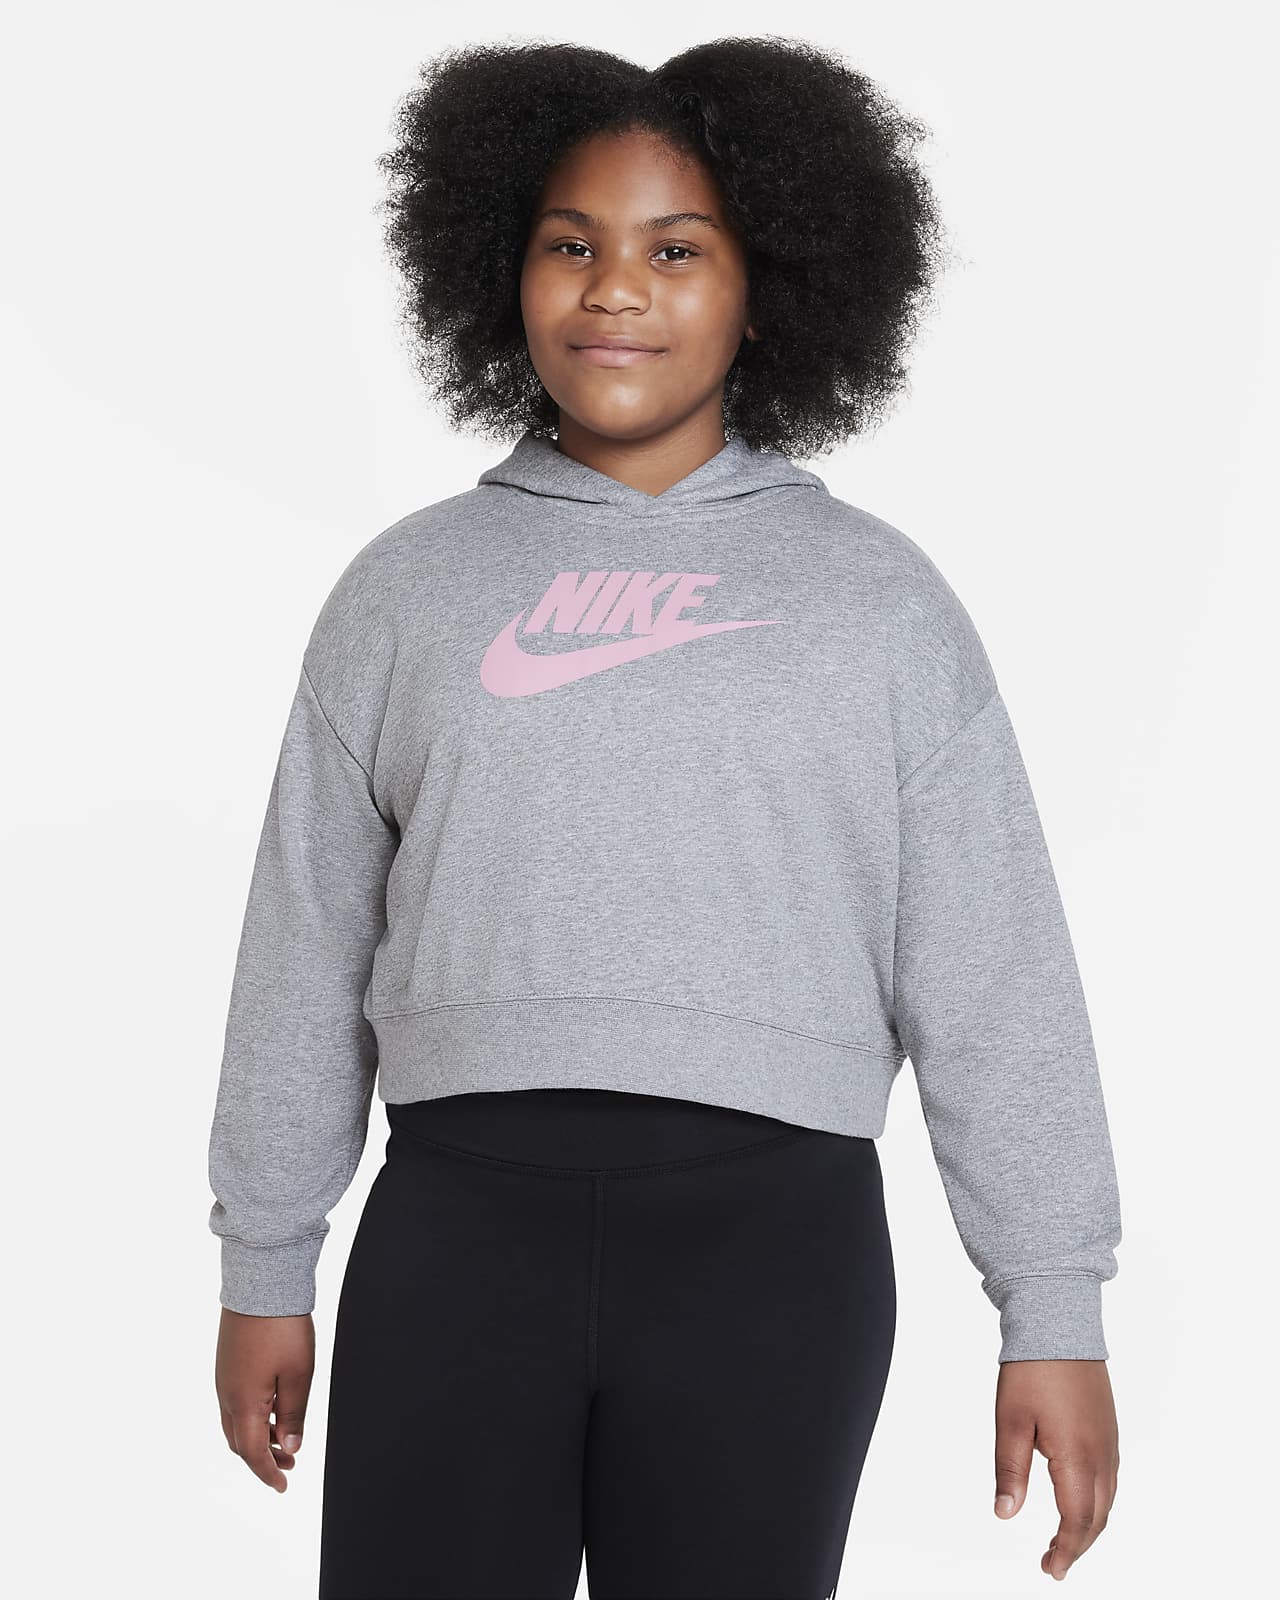 Agnes Gray masilla prima Sudadera con capucha corta de French Terry para niña talla grande (talla  extendida) Nike Sportswear Club. Nike.com